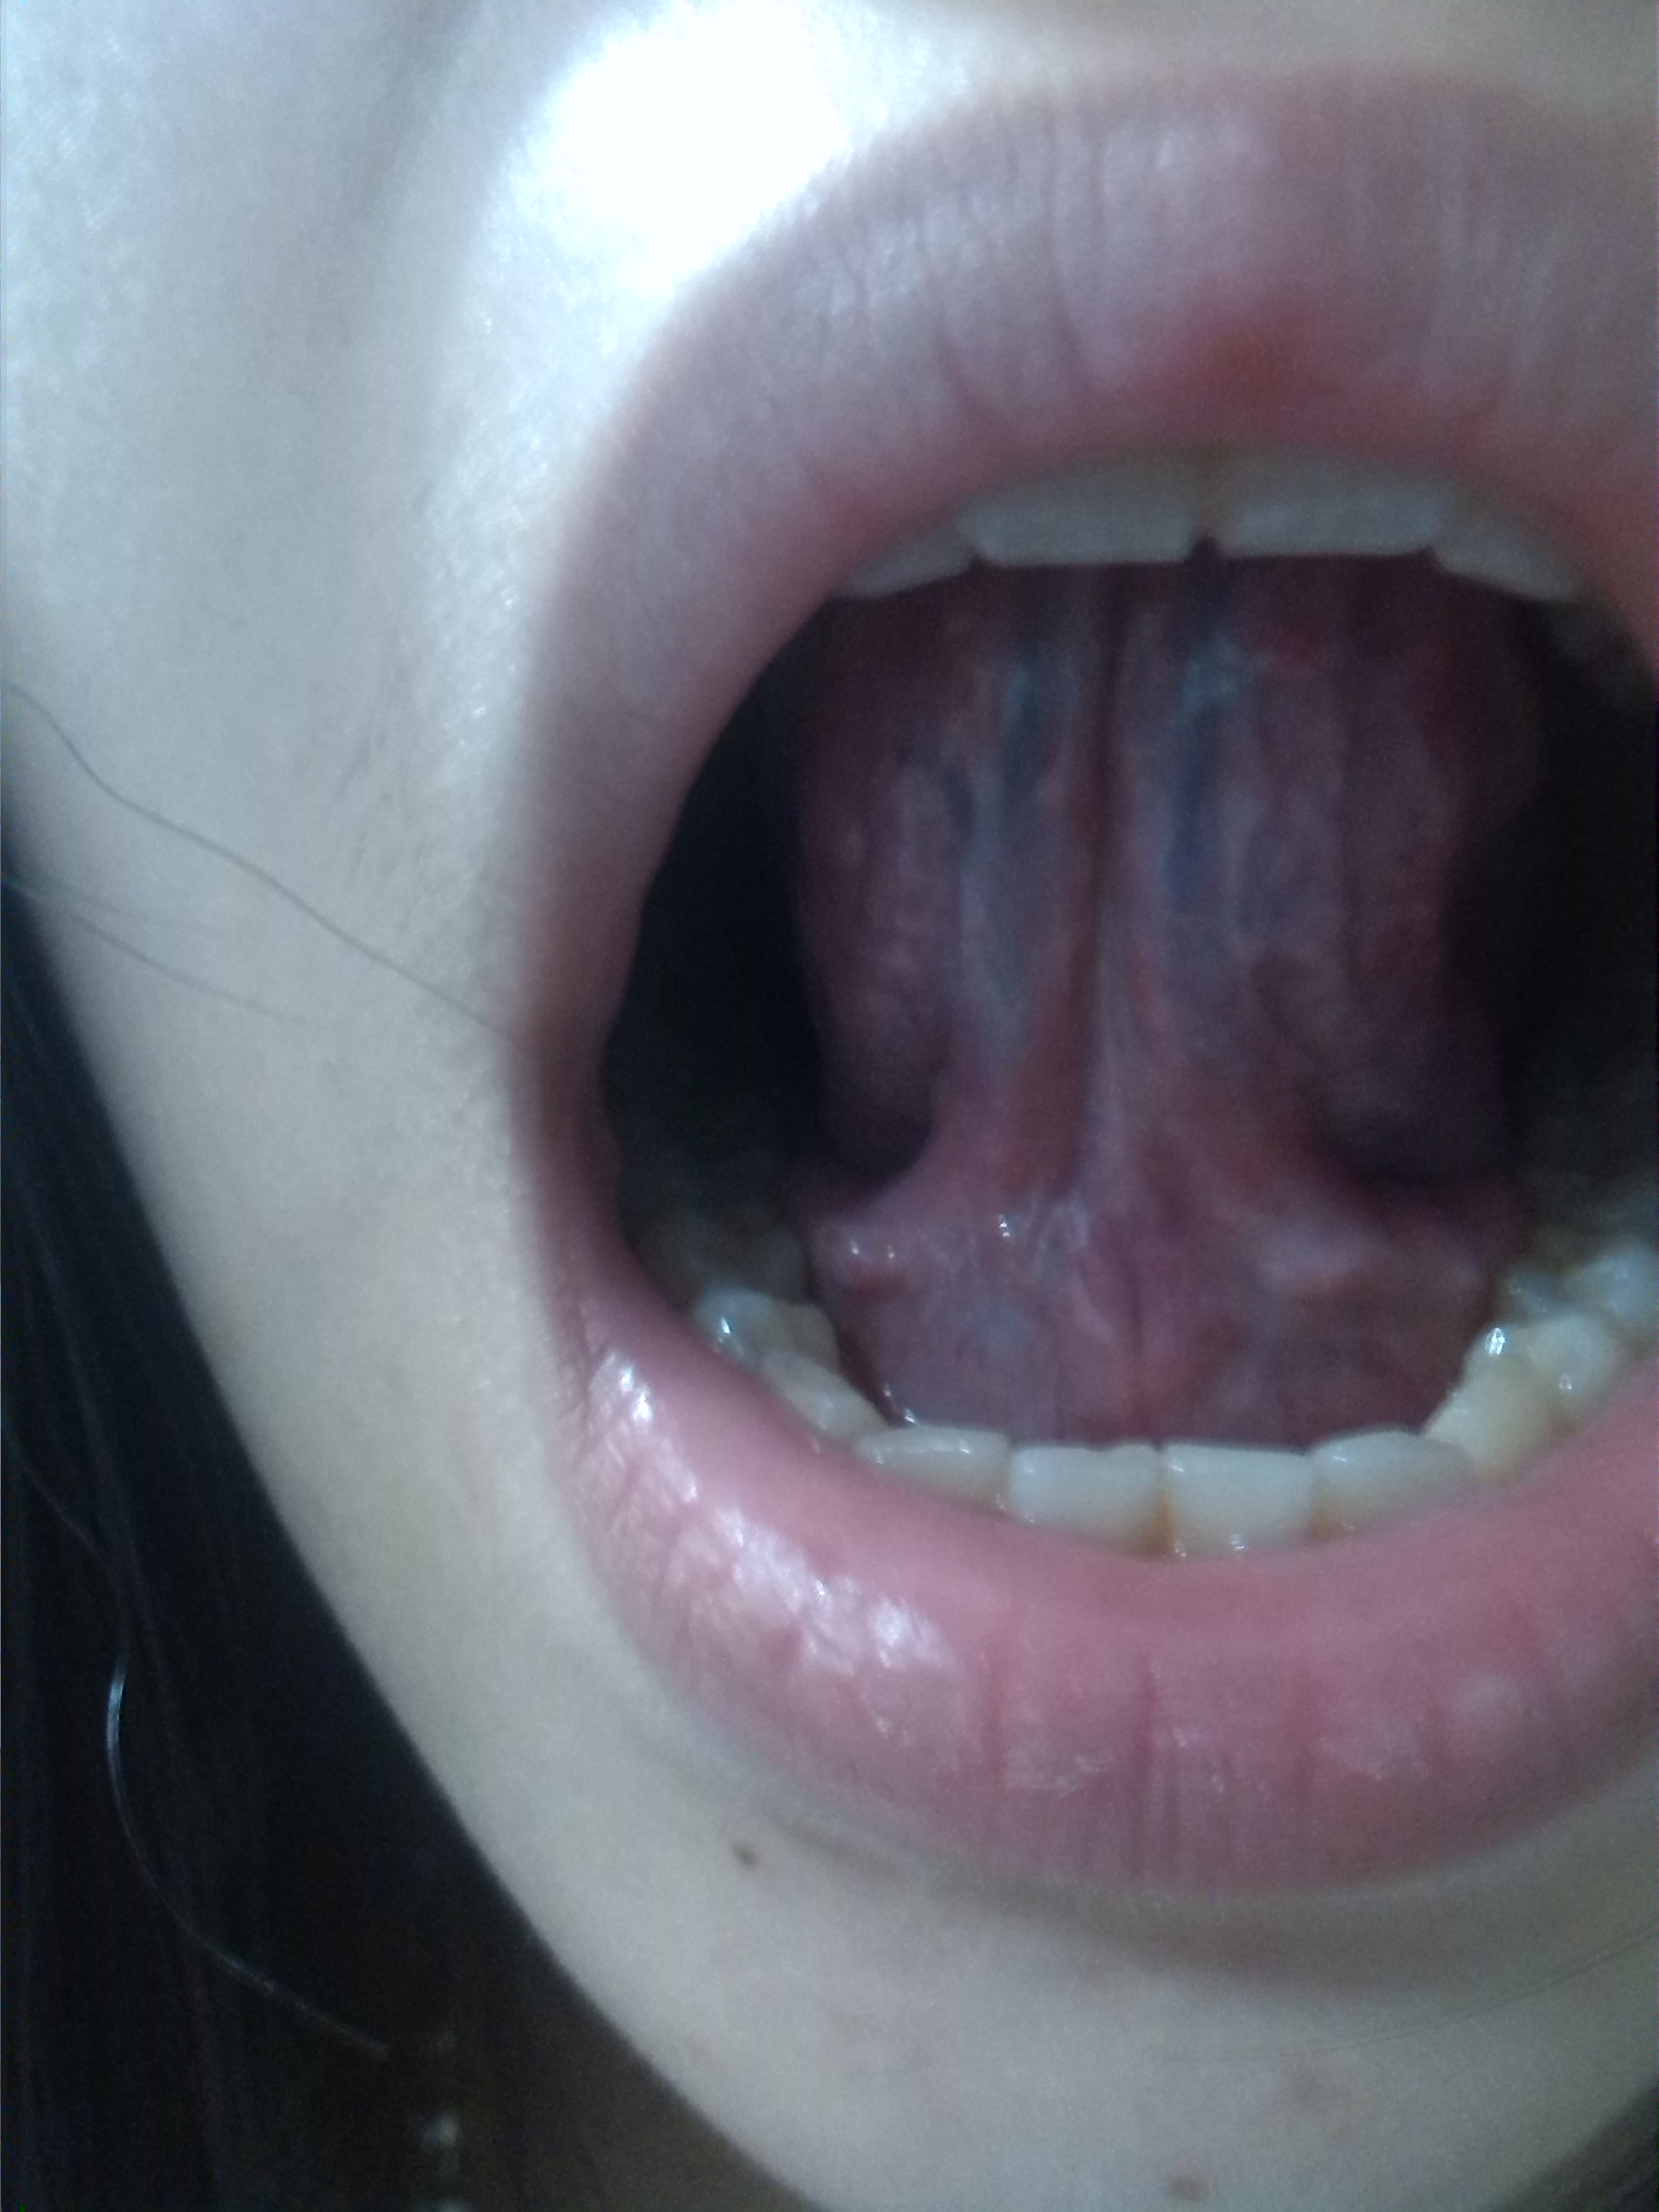 医生我想请问下我的舌头这样是怎么了而且根部摸起来有一点一粒